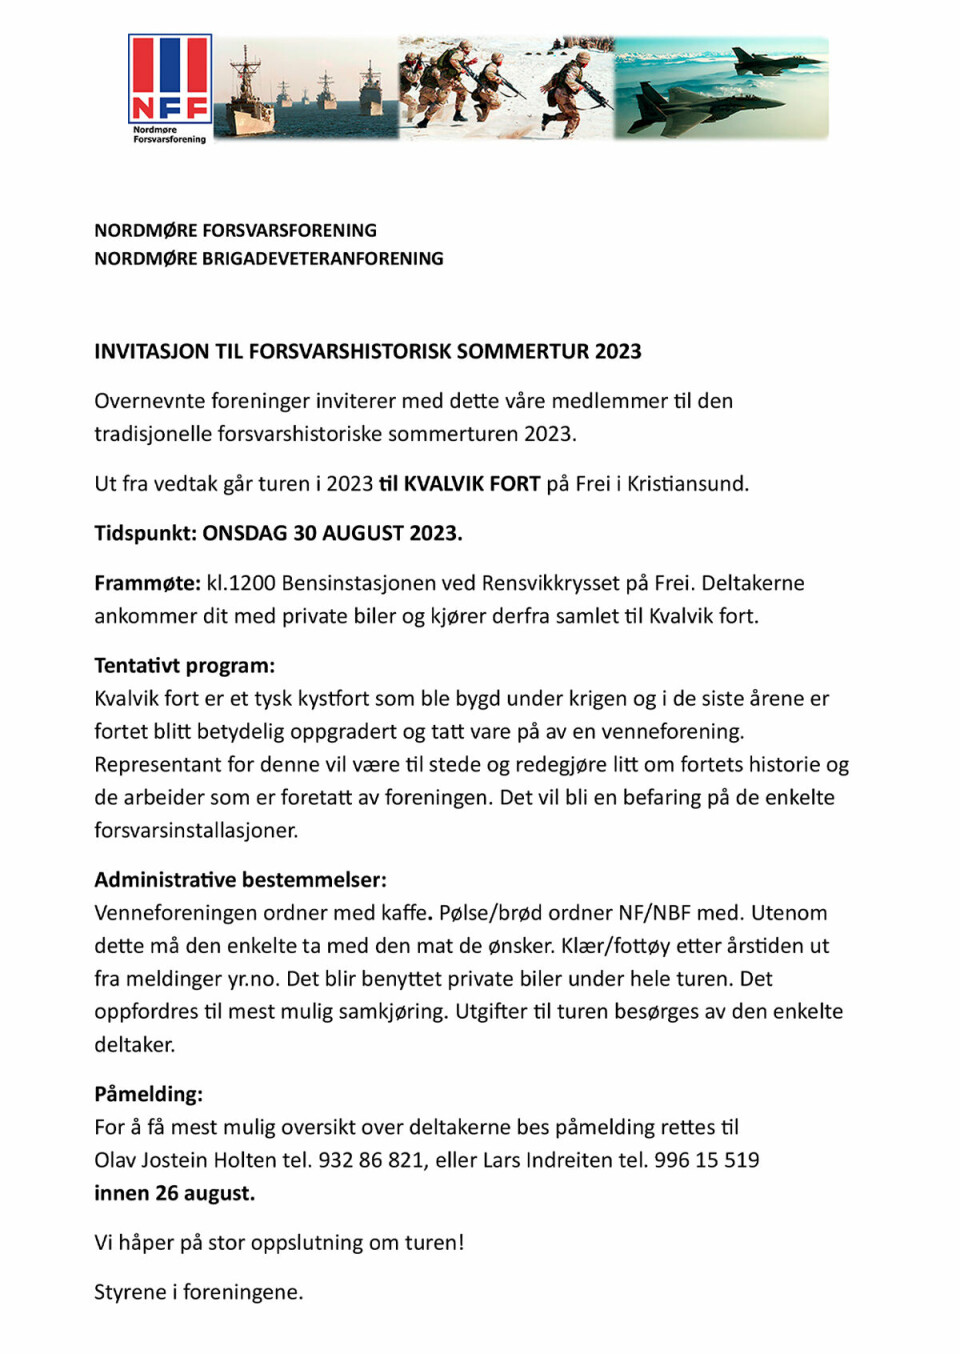 Invitasjonsplakat for forhistorisk sommertur 2023 fra Nordmøre Forsvarsforening